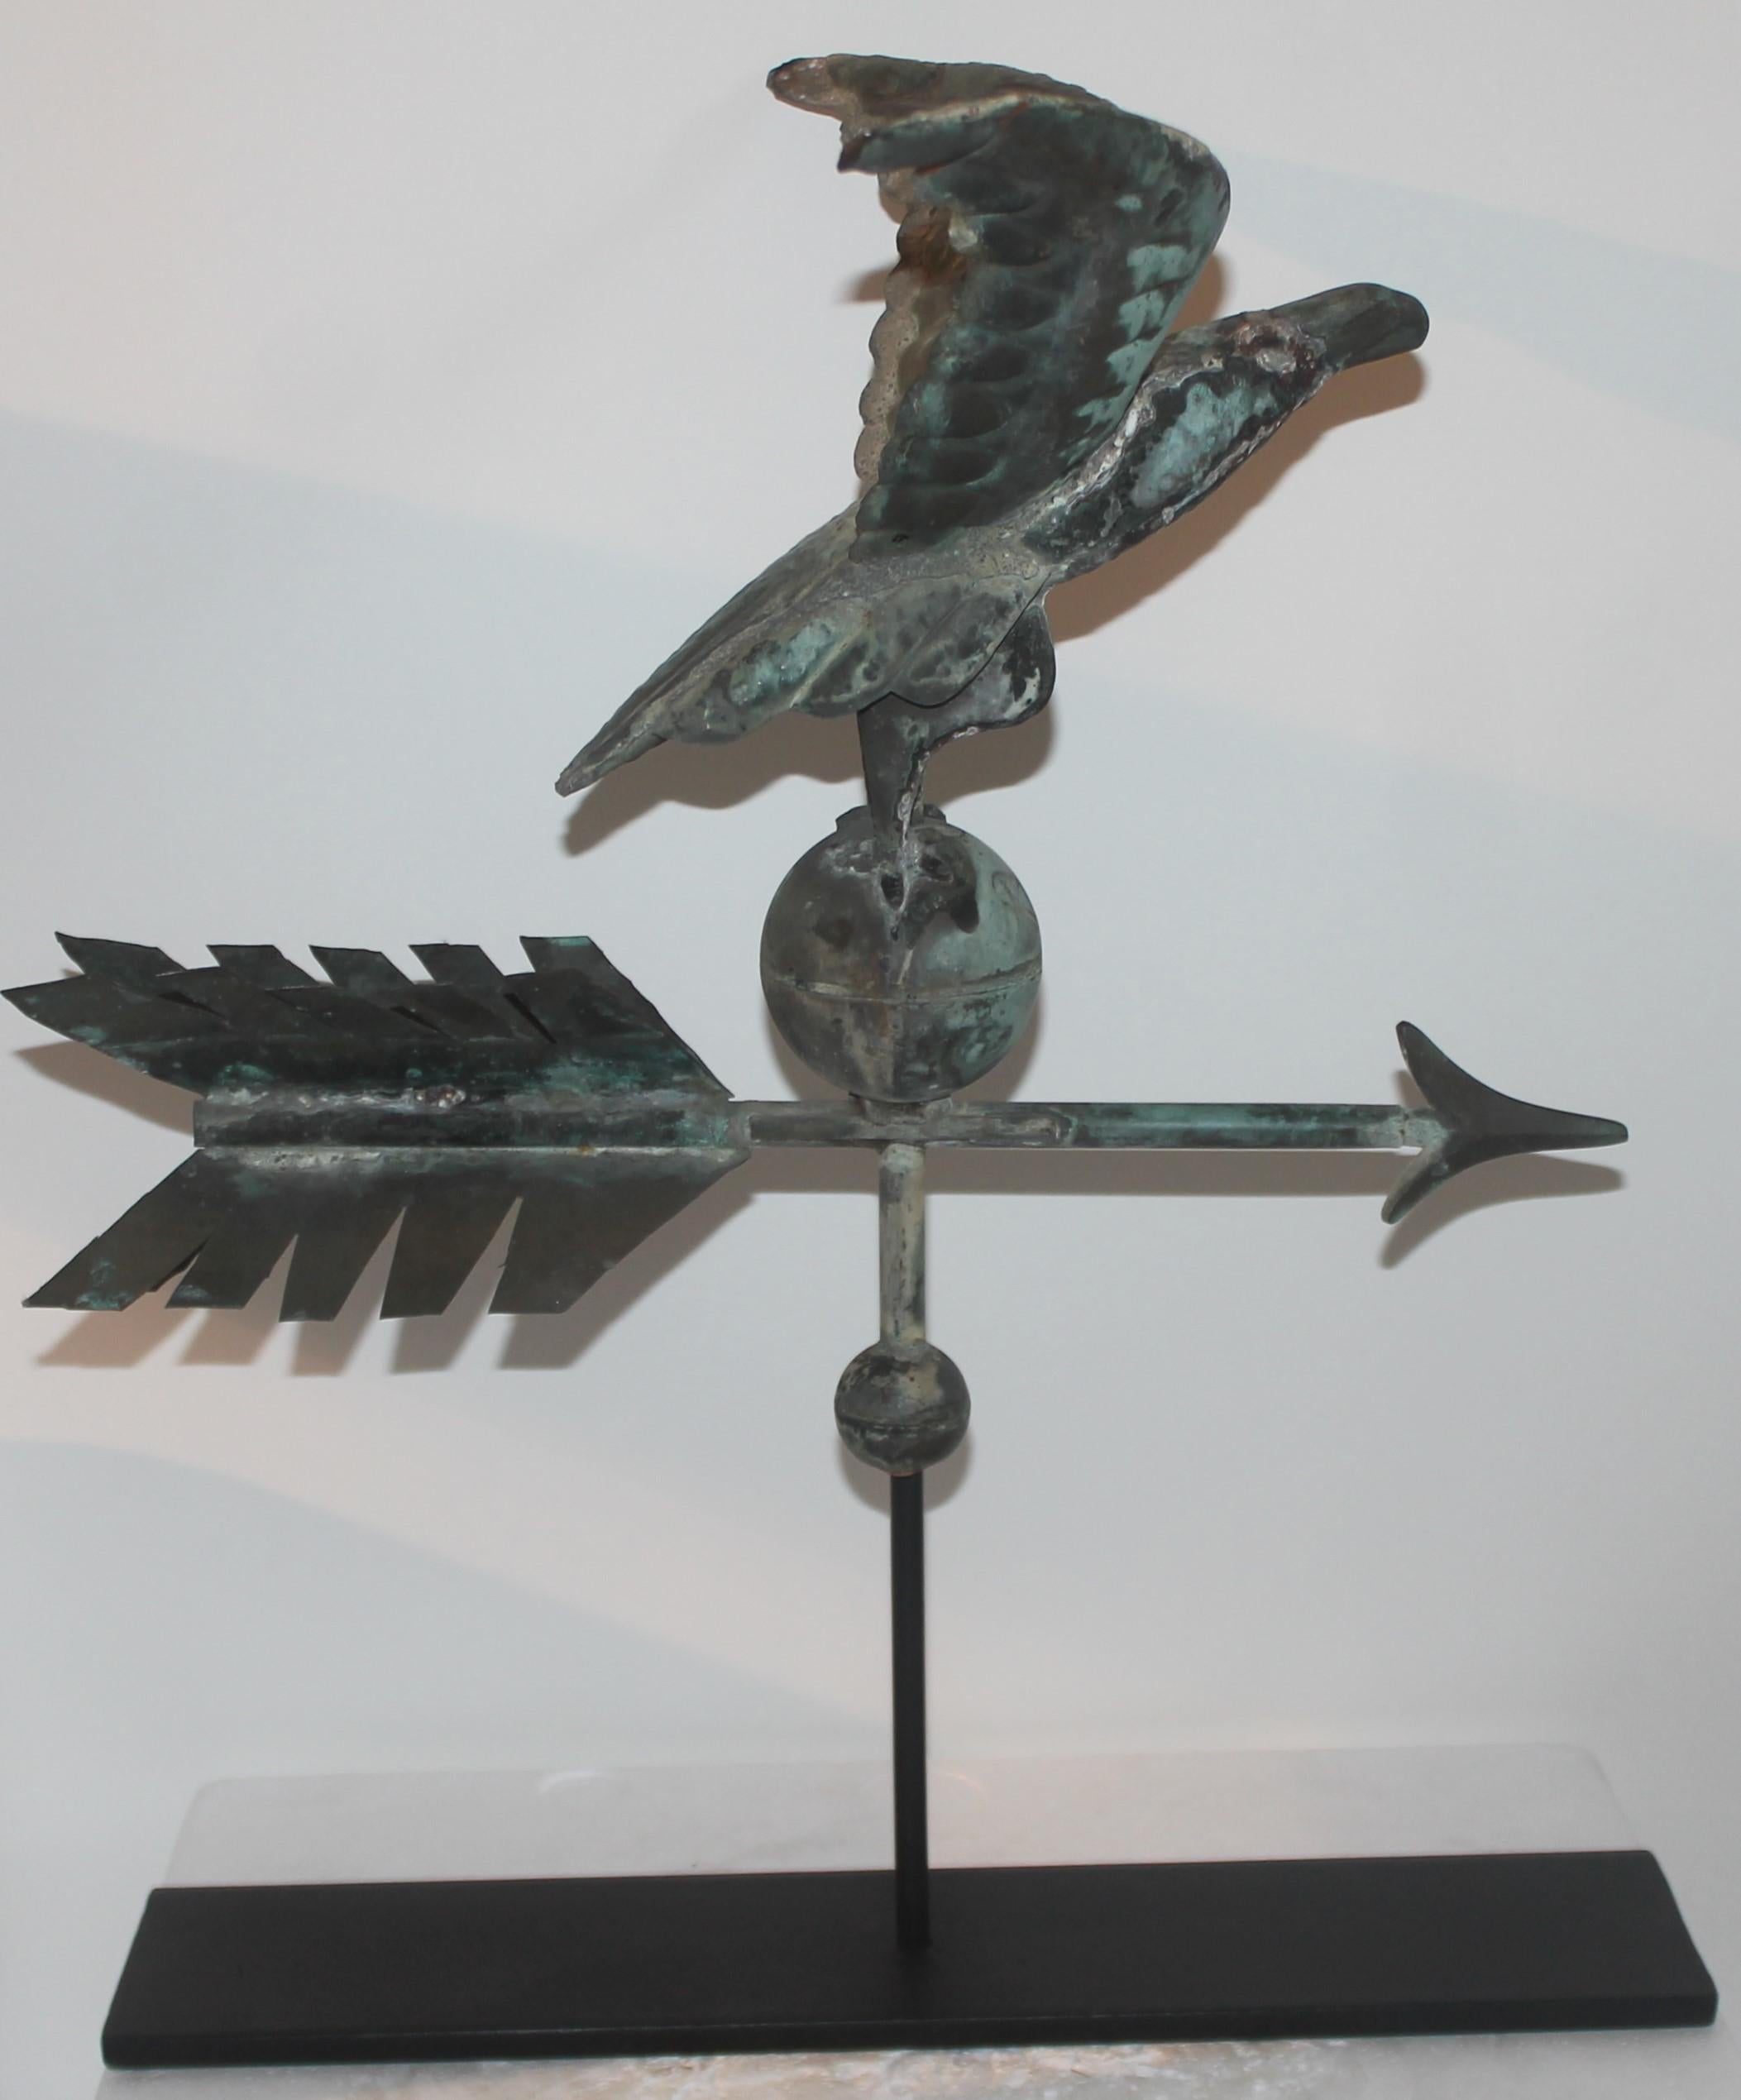 Diese erstaunliche, seltene Adler-Wetterfahne aus dem 19. Jahrhundert sitzt auf dem ungewöhnlichen Pfeil in einer Grünspan-Kupferpatina. Die Nase ist aus Zink, ebenso die Pfeilspitze. Diese Fahne steht auf einem speziell angefertigten Eisenständer.